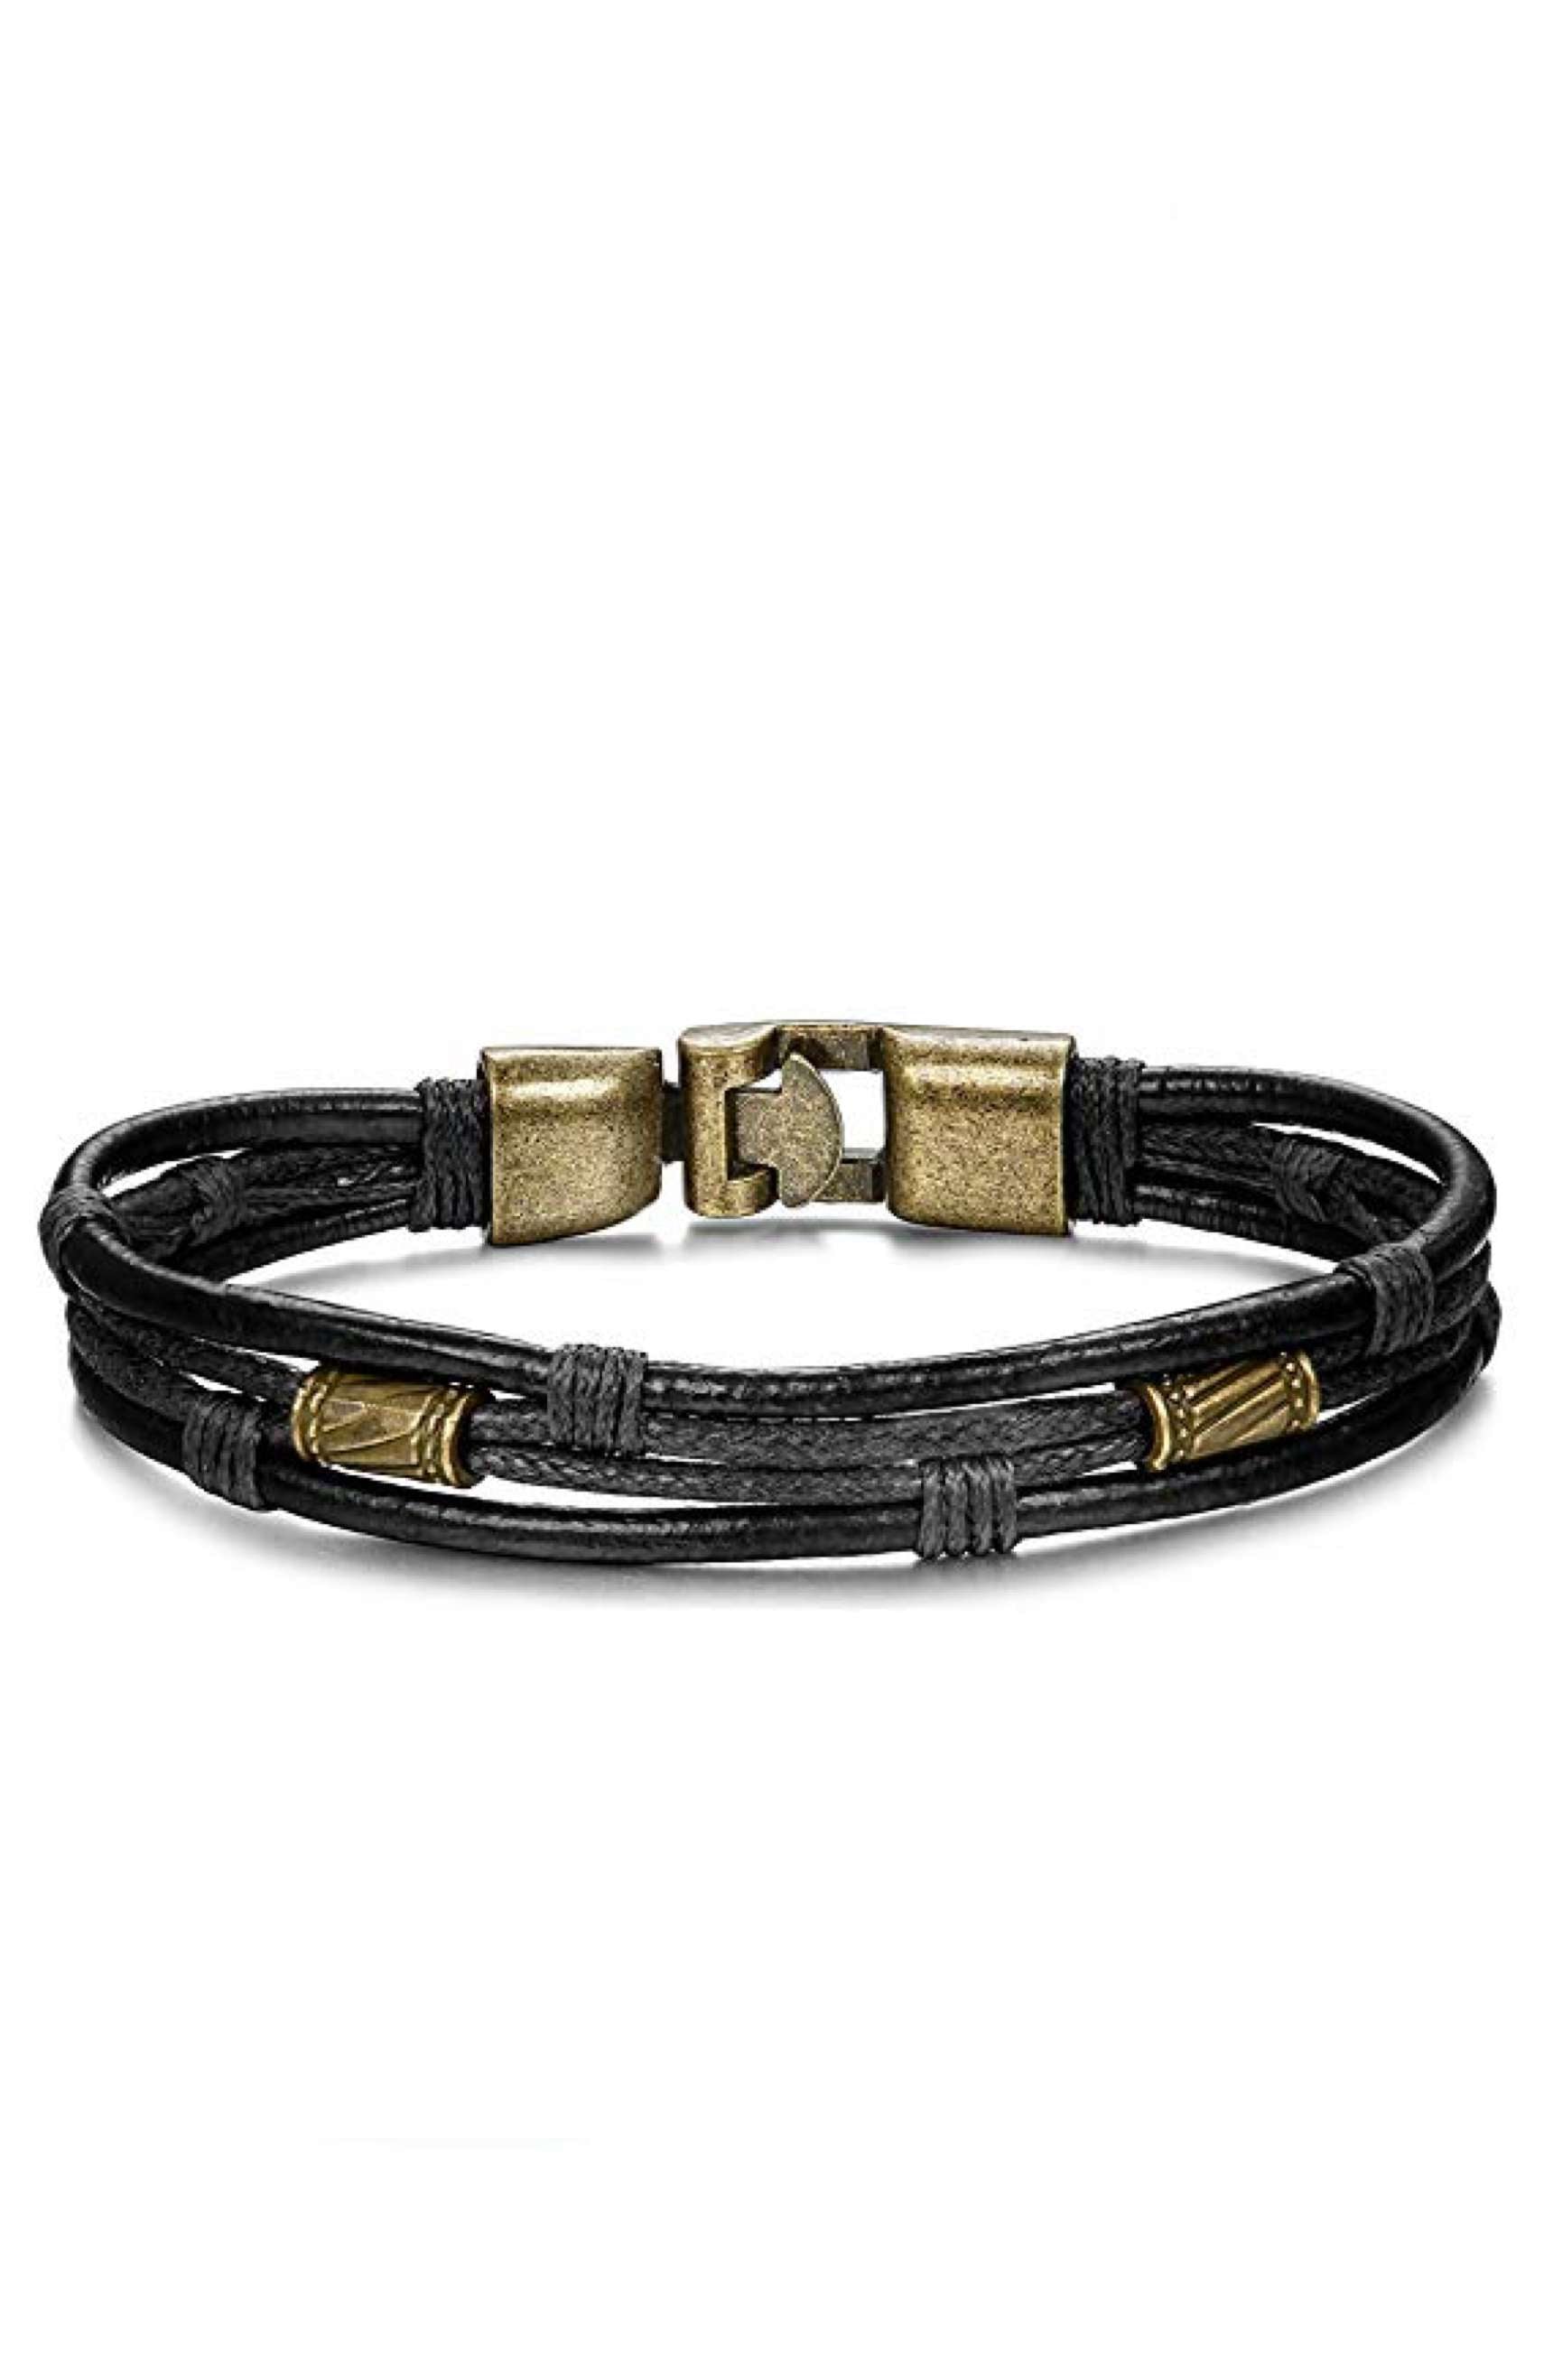 Gold & Black Leather Bracelet